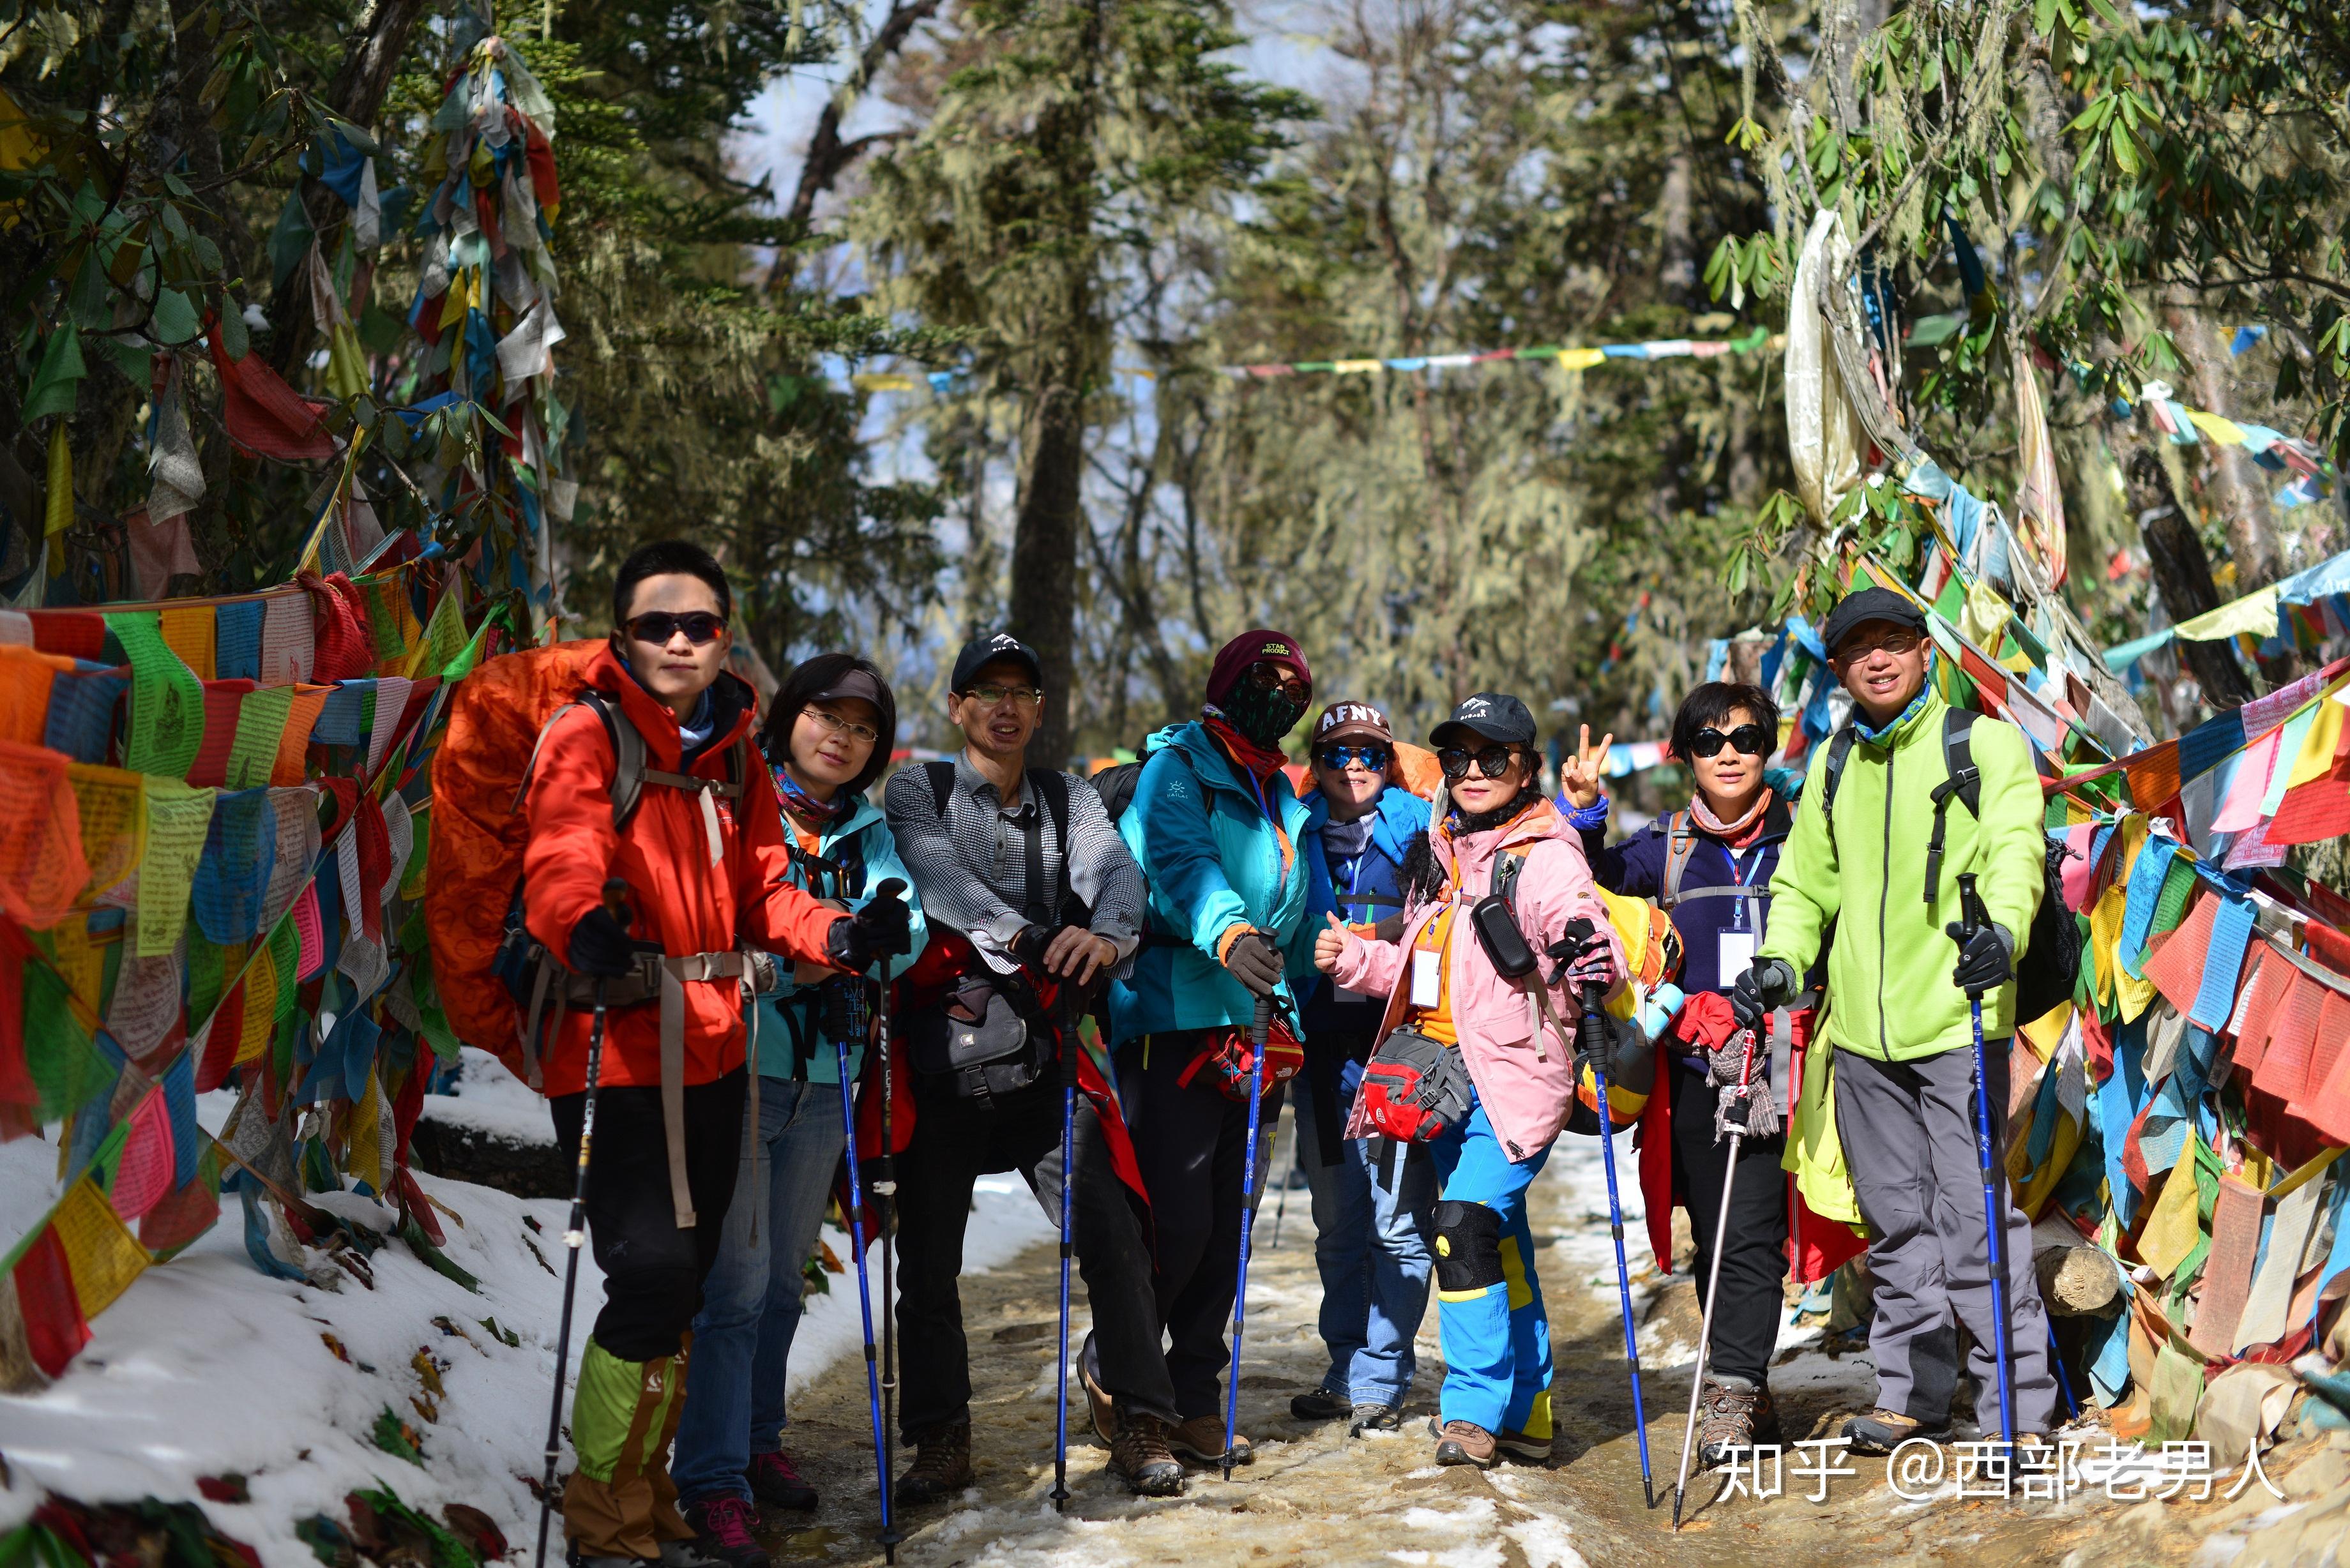 它被国家地理称为最美雪山, 藏区八大神山之首, 每年有无数人朝拜